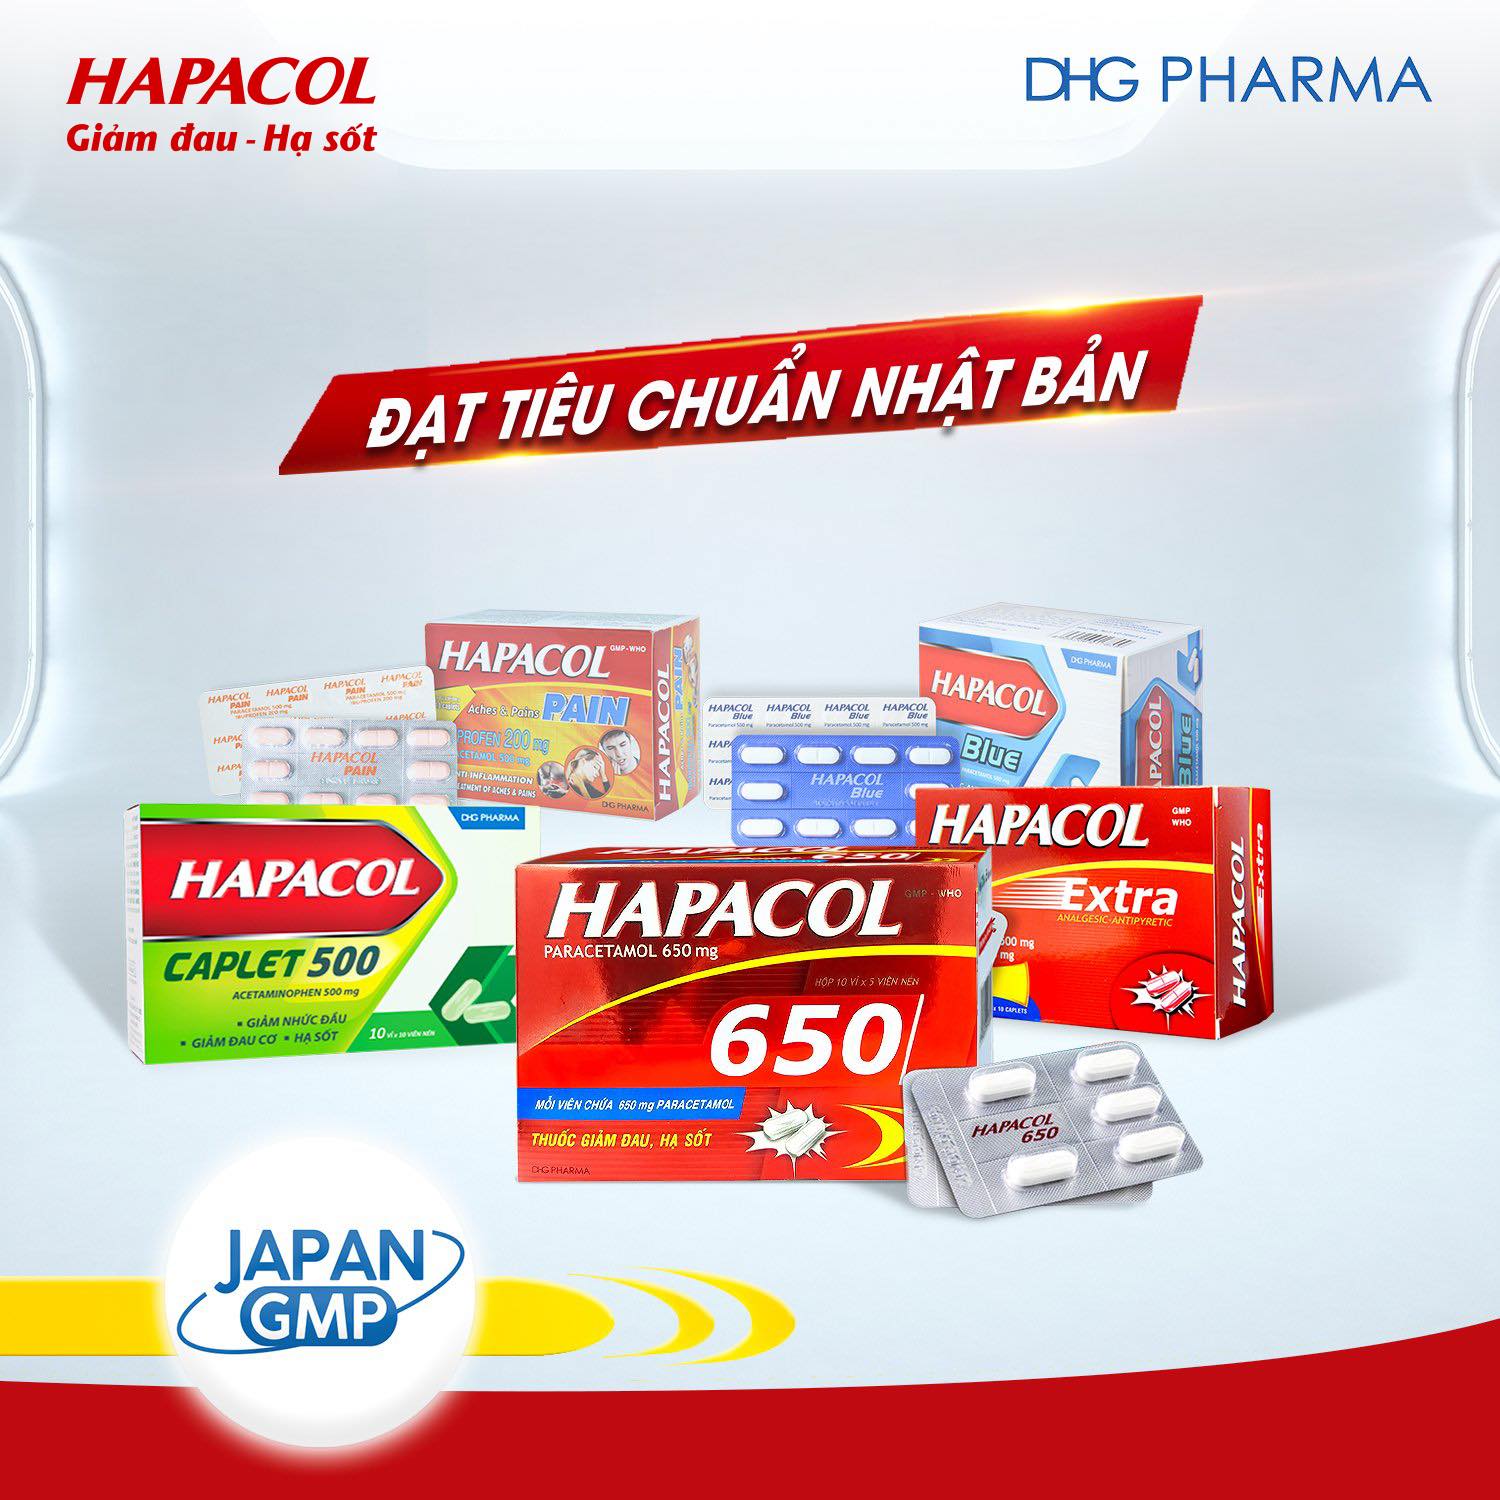 Sản phẩm Hapacol trong chiến lược marketing mix của DHG